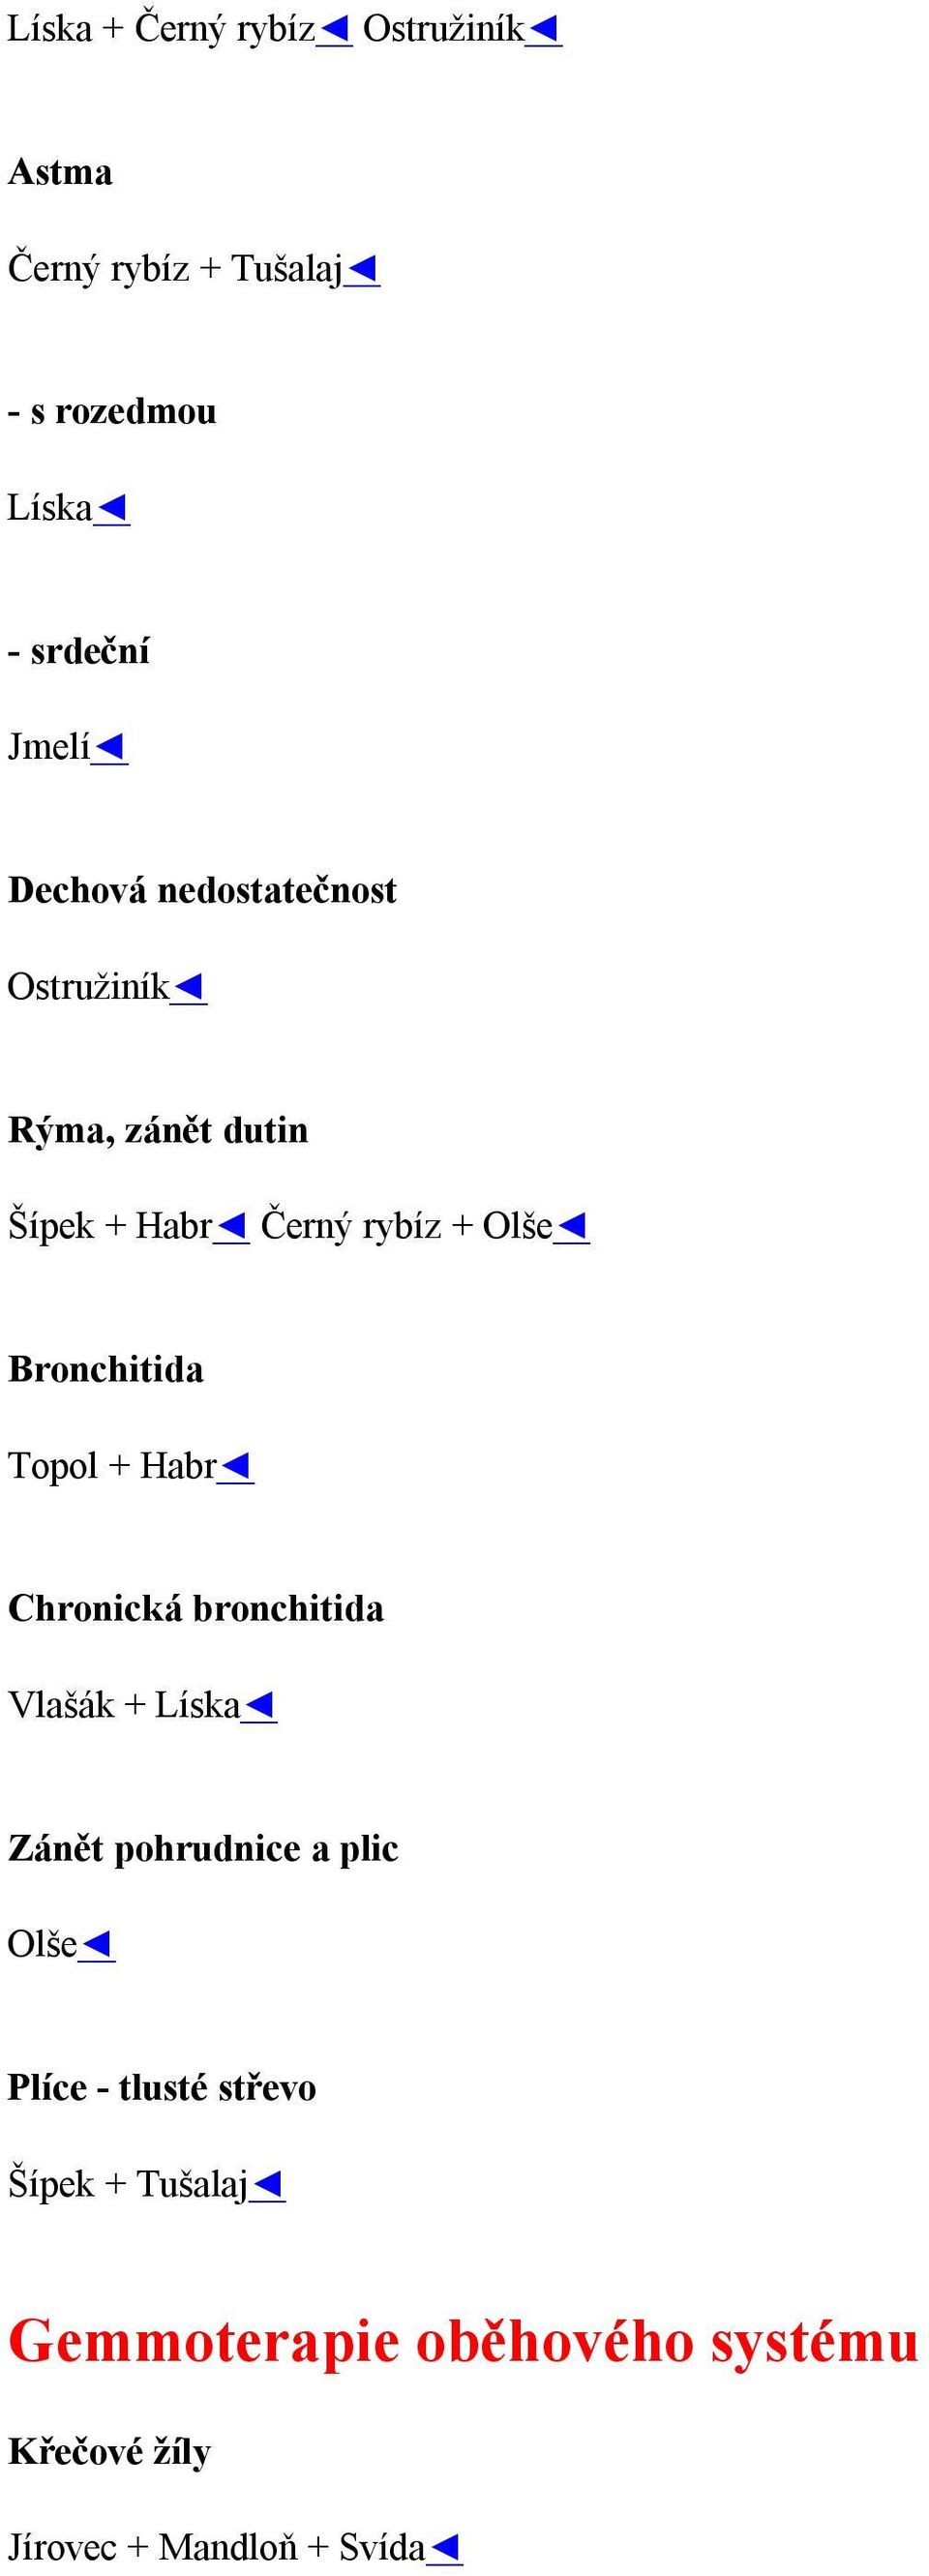 Bronchitida Topol + Habr Chronická bronchitida Vlašák + Líska Zánět pohrudnice a plic Olše